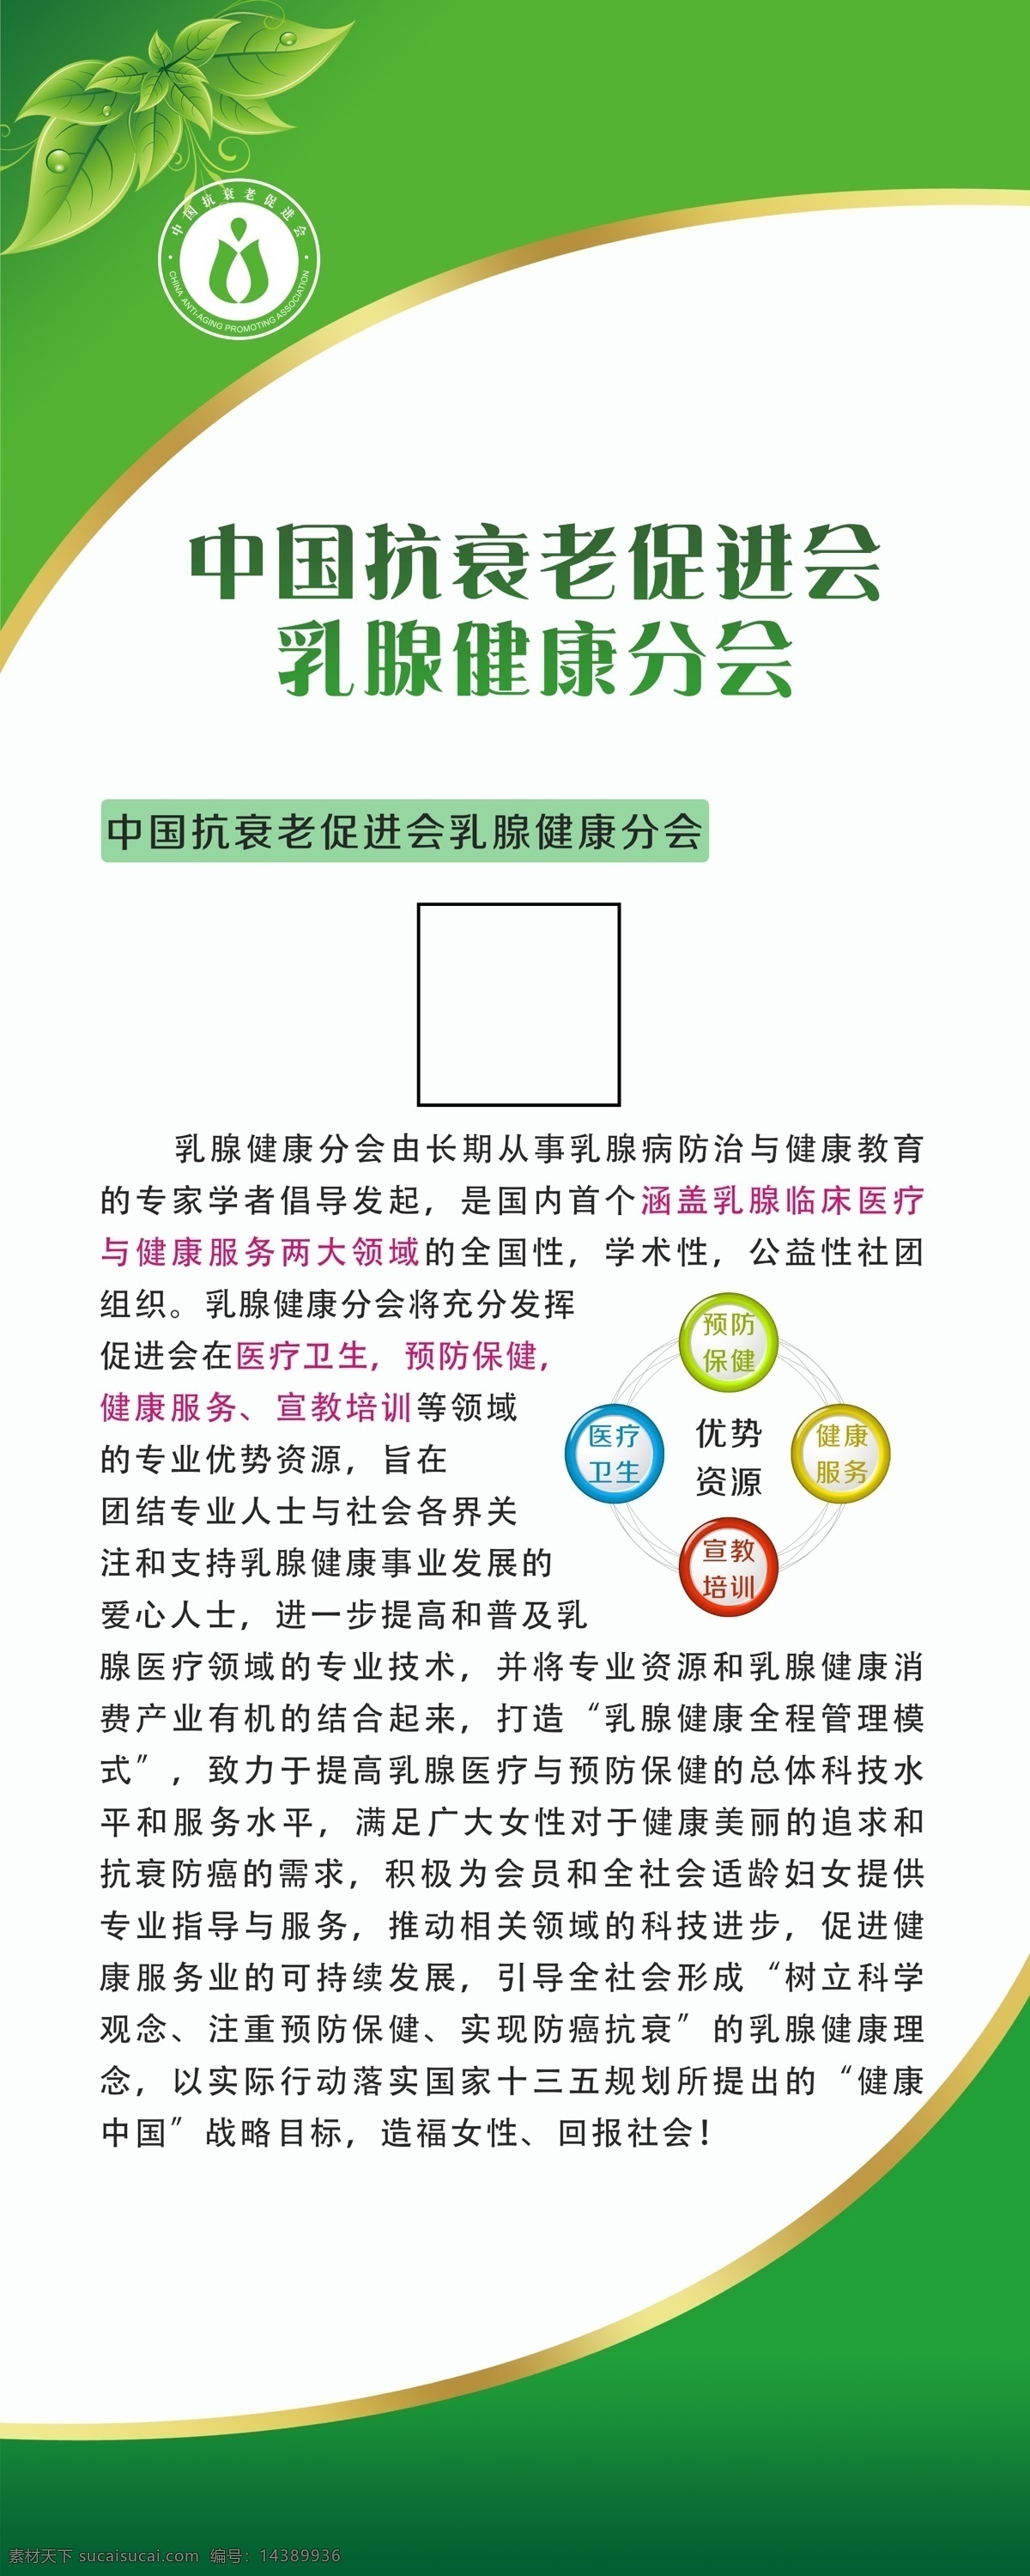 中国 搞 衰老 促进 乳腺 健康 分会 中国乳腺 联盟 x展架 分层图板 海报 宣传 设计元素